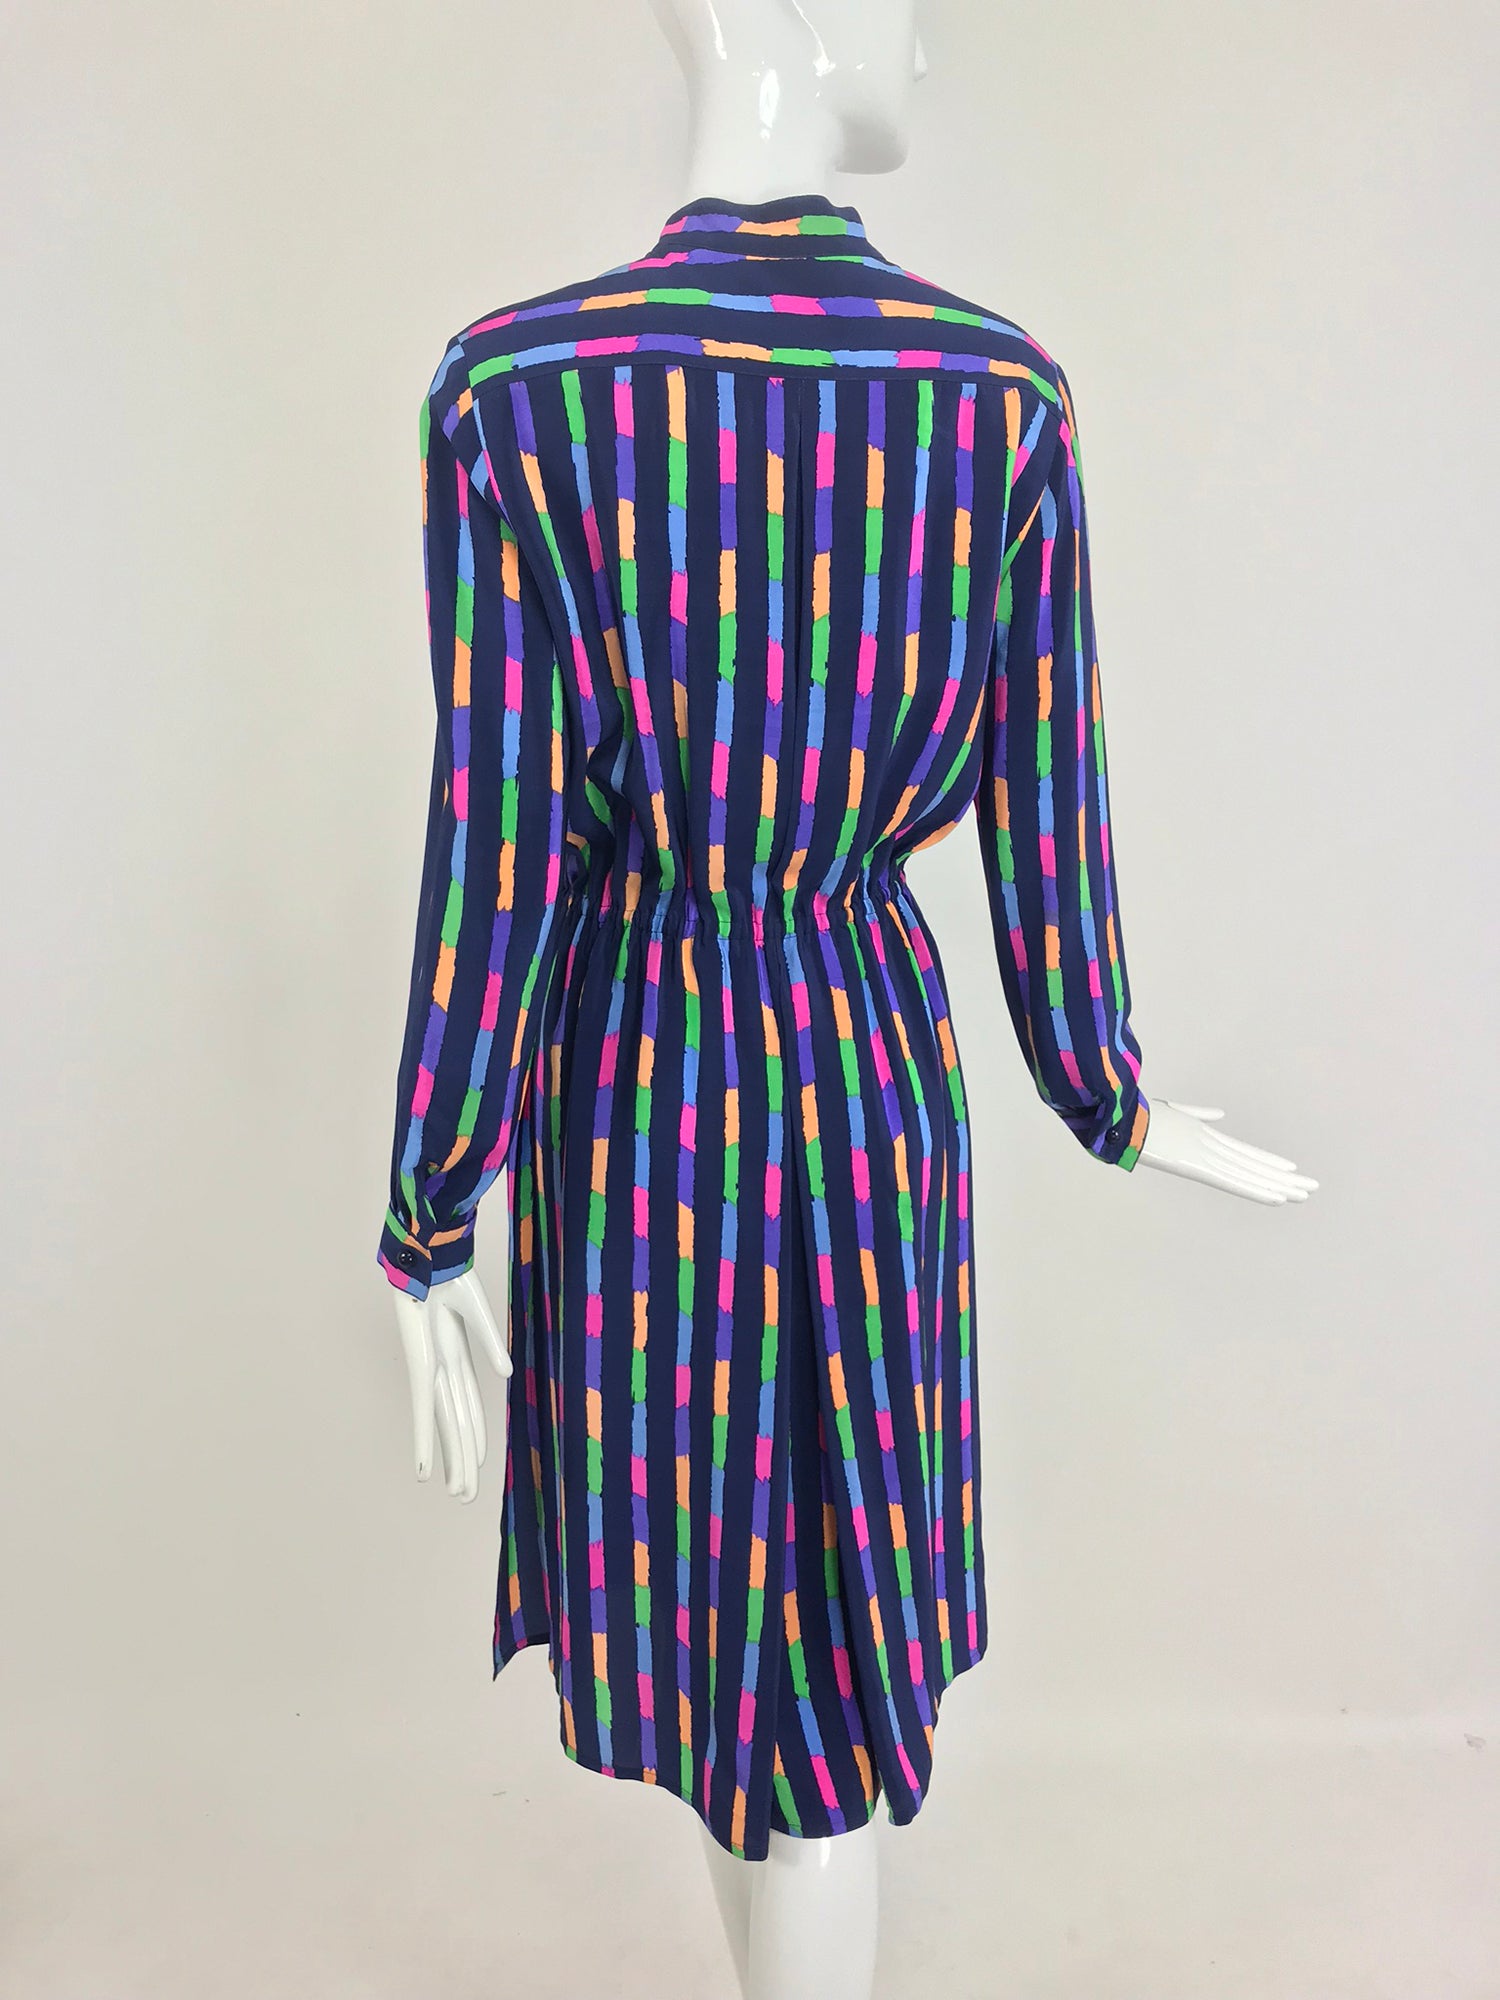 Louis Feraud Silk Colour Block Side Slit Shirtwaist Dress 1980s